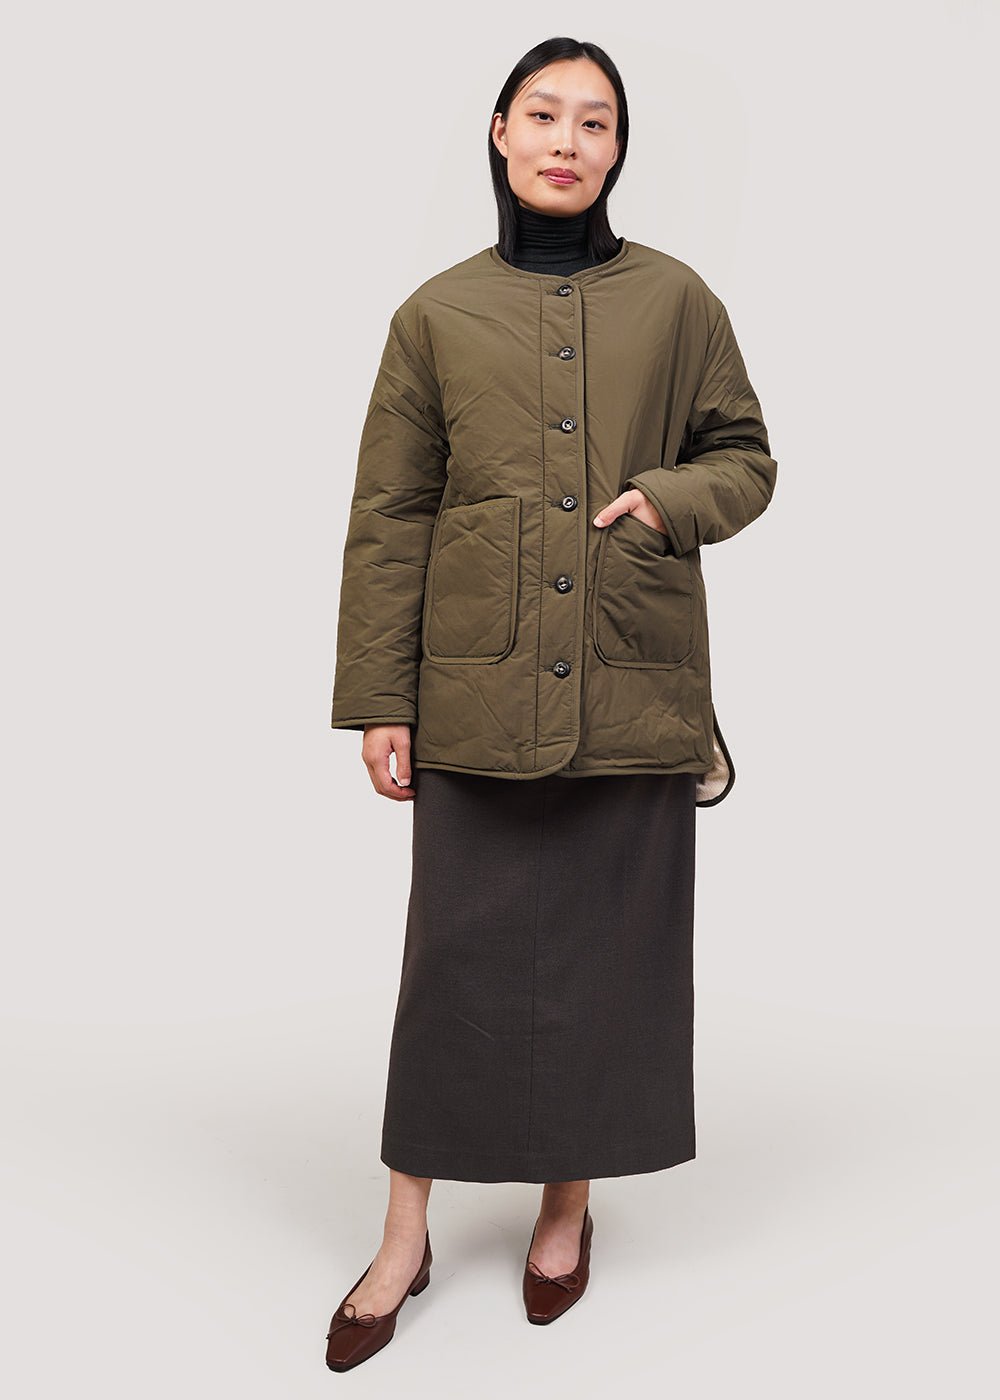 Mijeong Park Olive/Cream Reversible Padded Jacket - New Classics Studios Sustainable Ethical Fashion Canada